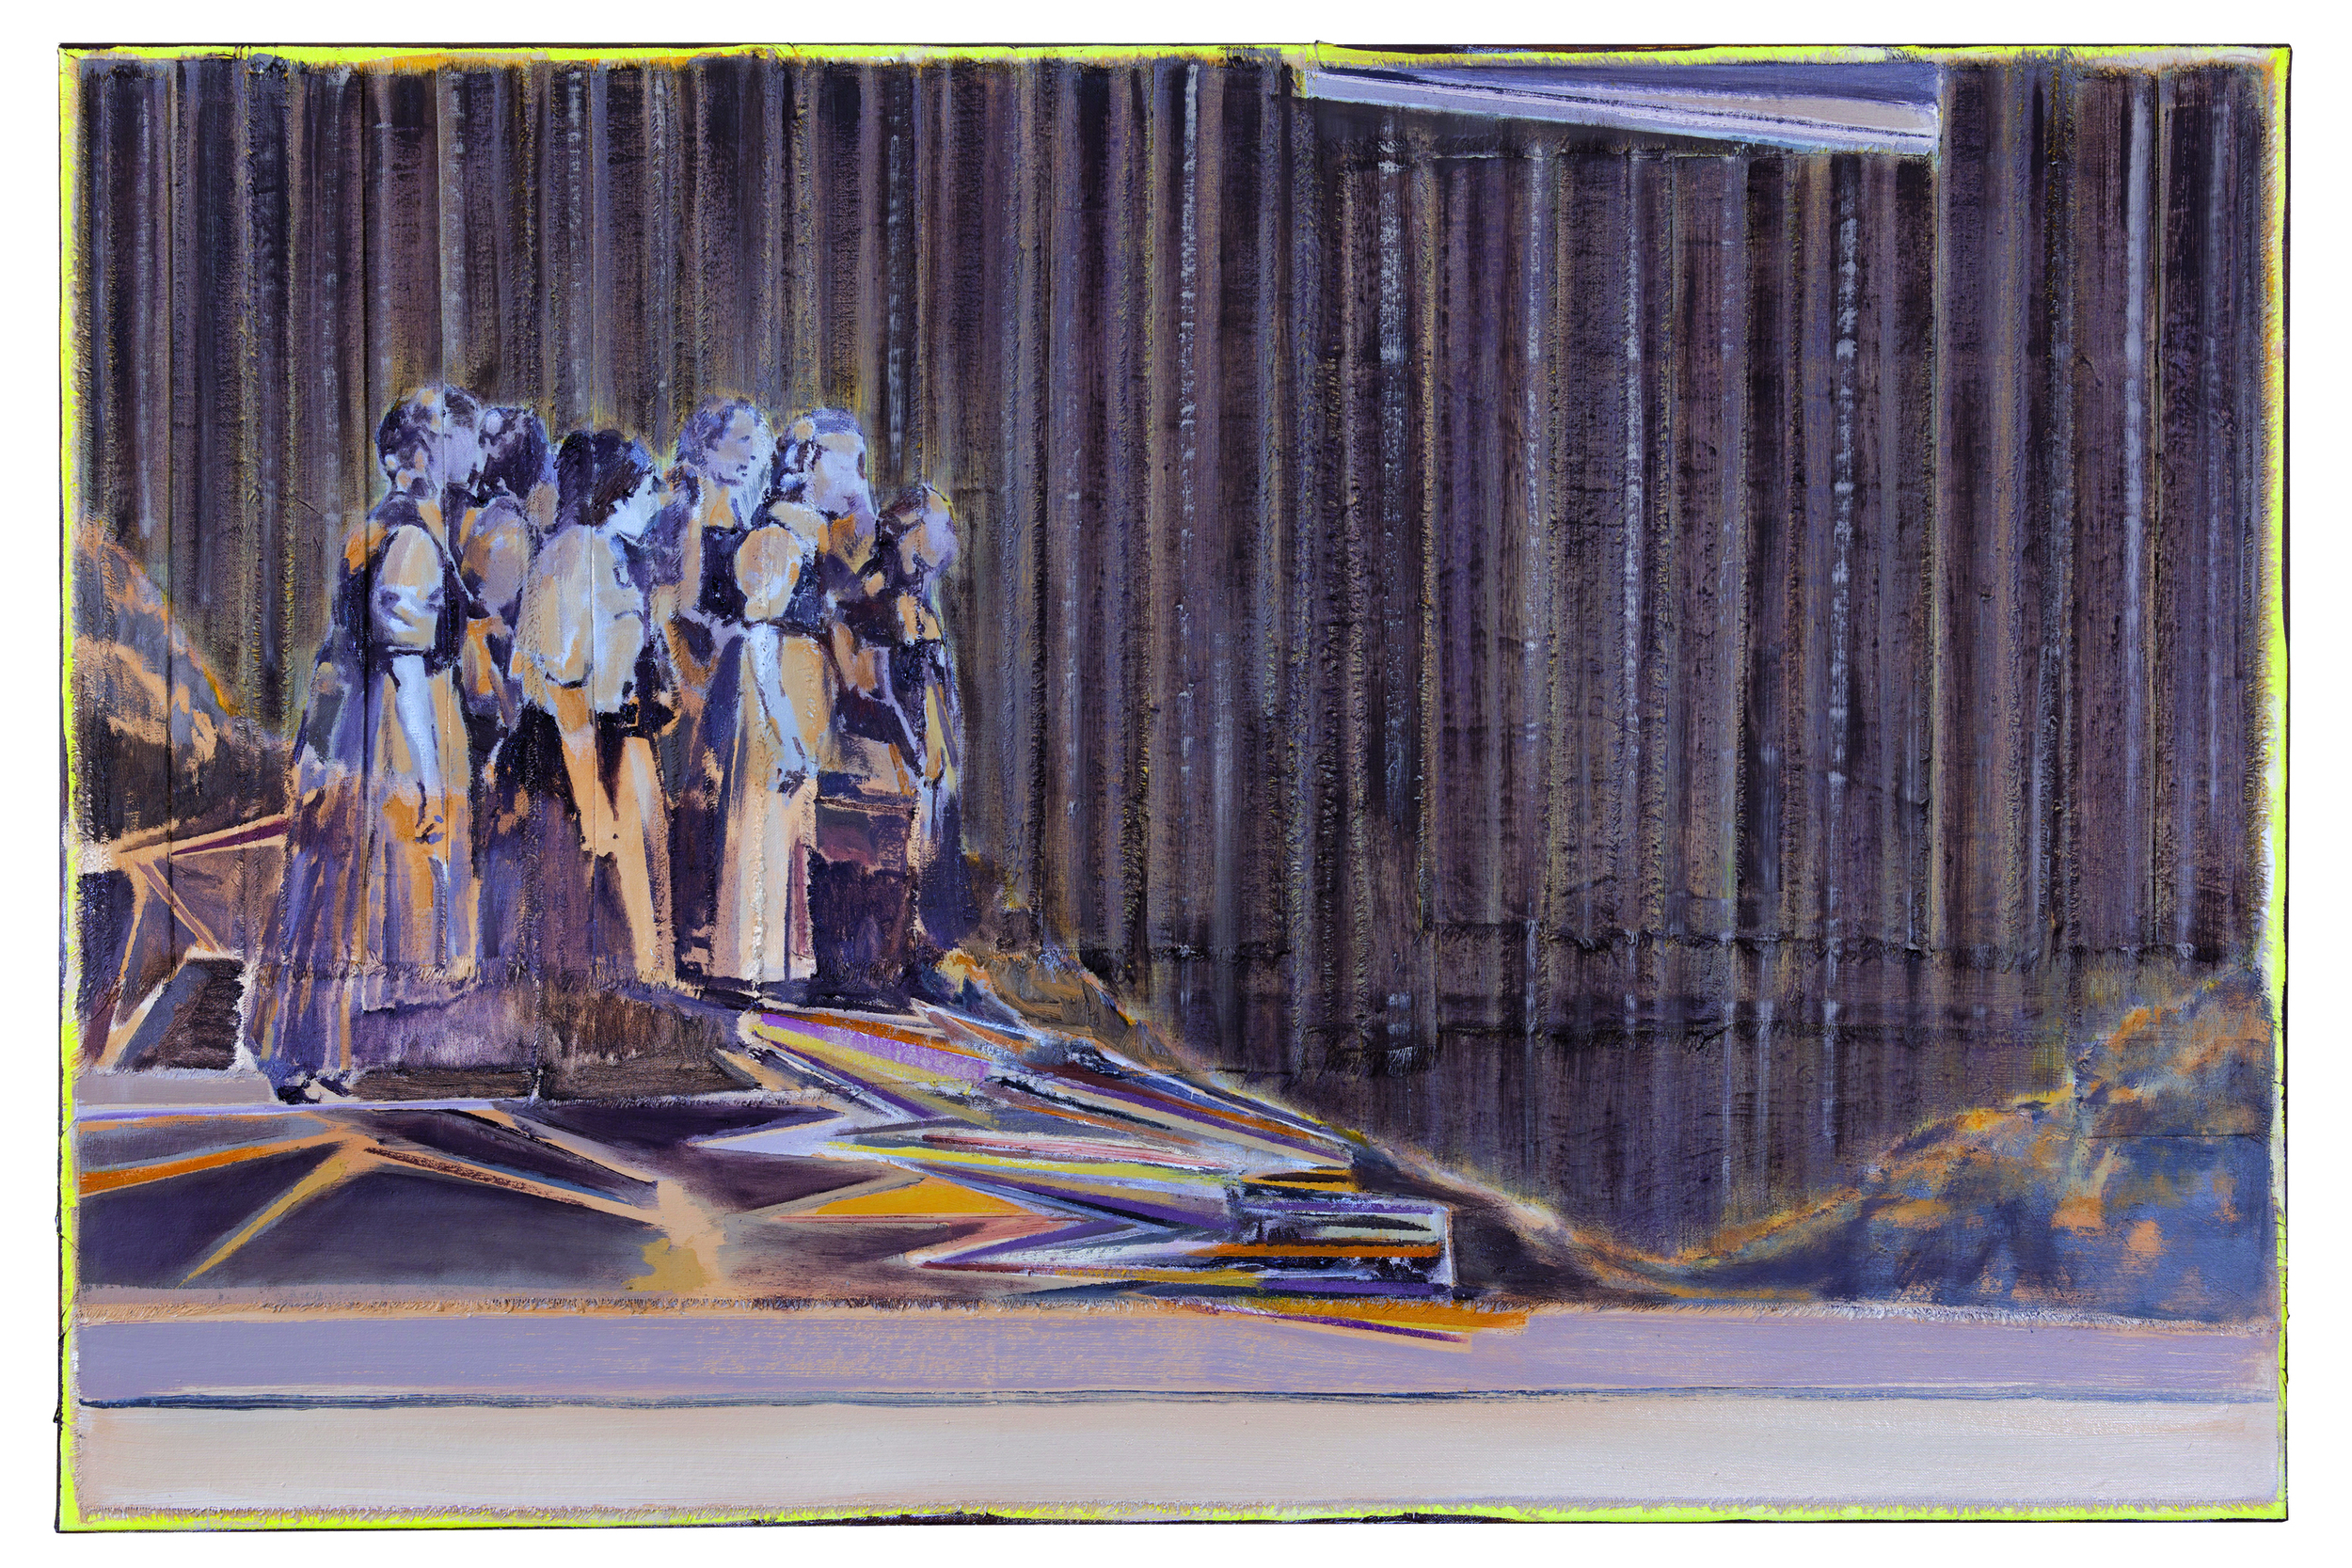   A SLICE OF LIFE,&nbsp; oil on folded canvas,&nbsp;32x48 in (80x120cm),&nbsp;2015    